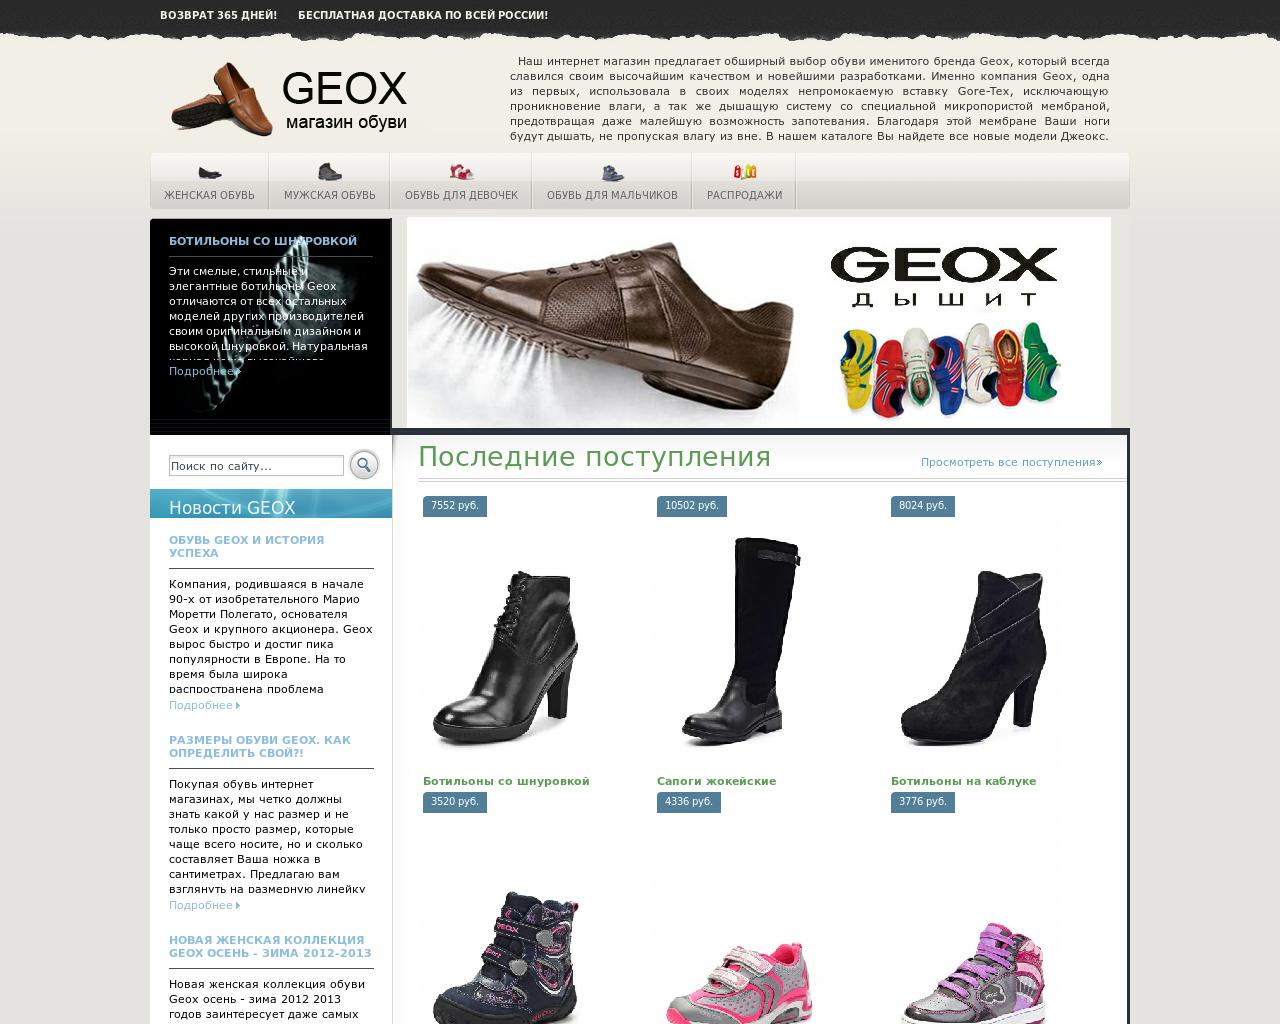 Сайт геокс интернет магазин